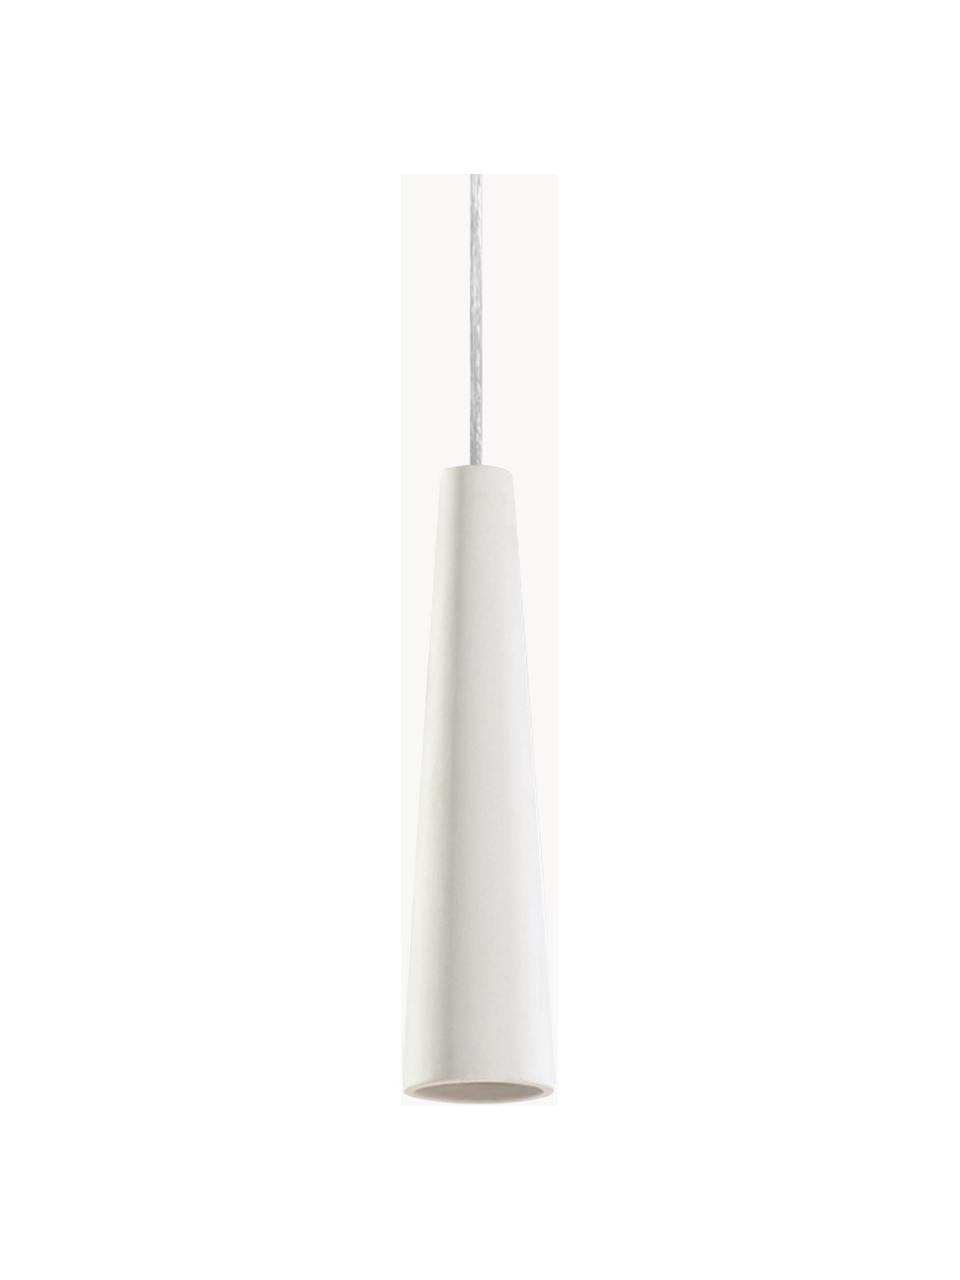 Kleine keramische hanglamp Alverna, Lampenkap: keramiek, Wit, gebroken wit, Ø 8 x H 32 cm